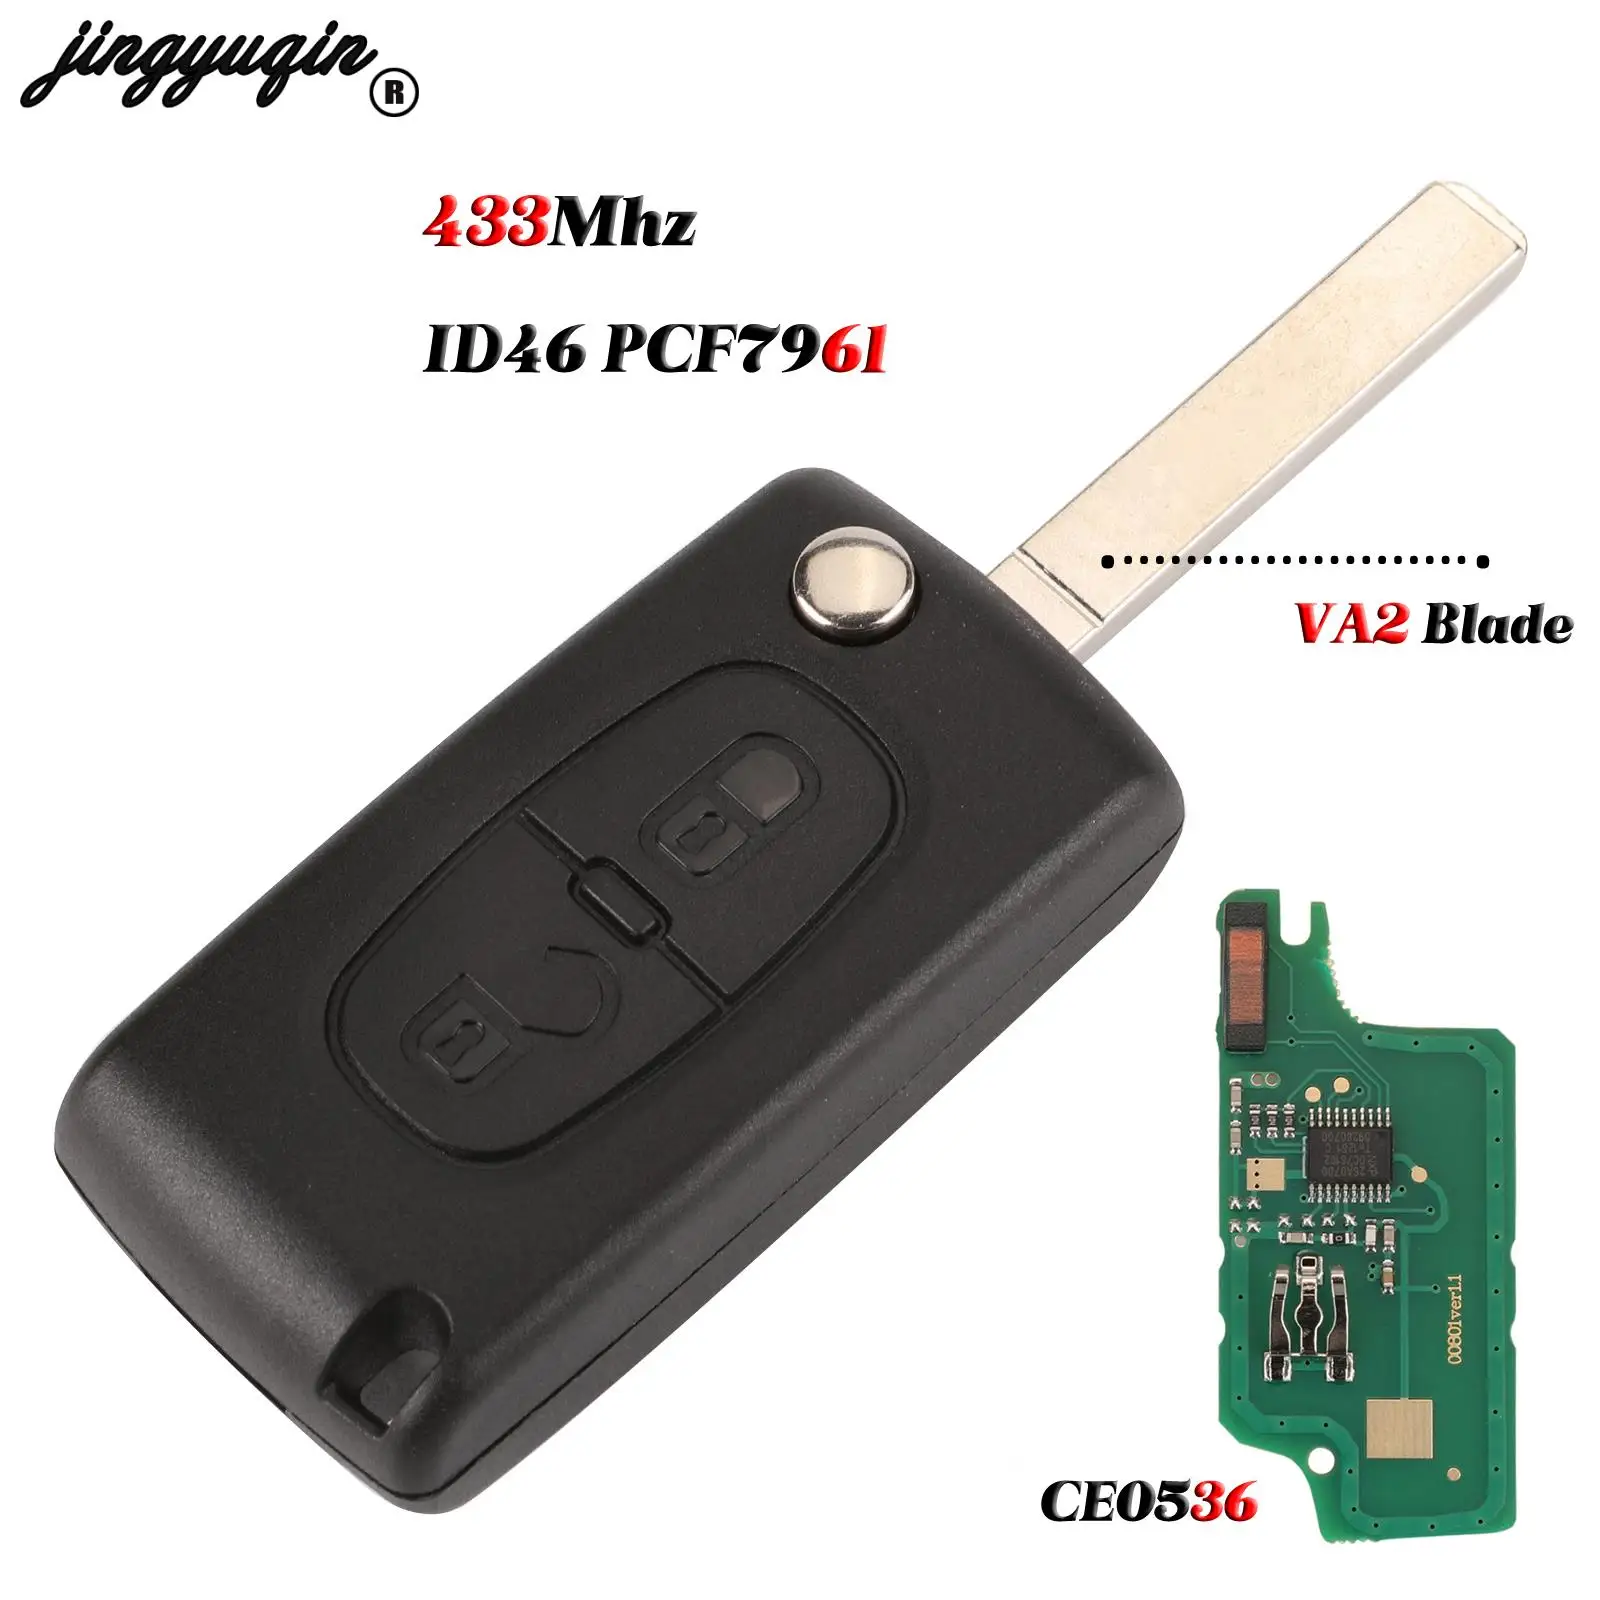 jingyuqin Flip Folding 2 Button Car Remote Key For PEUGEOT 206 307 308 207 407 408 For Citroen C2 C3 C4 C5 C6 C8